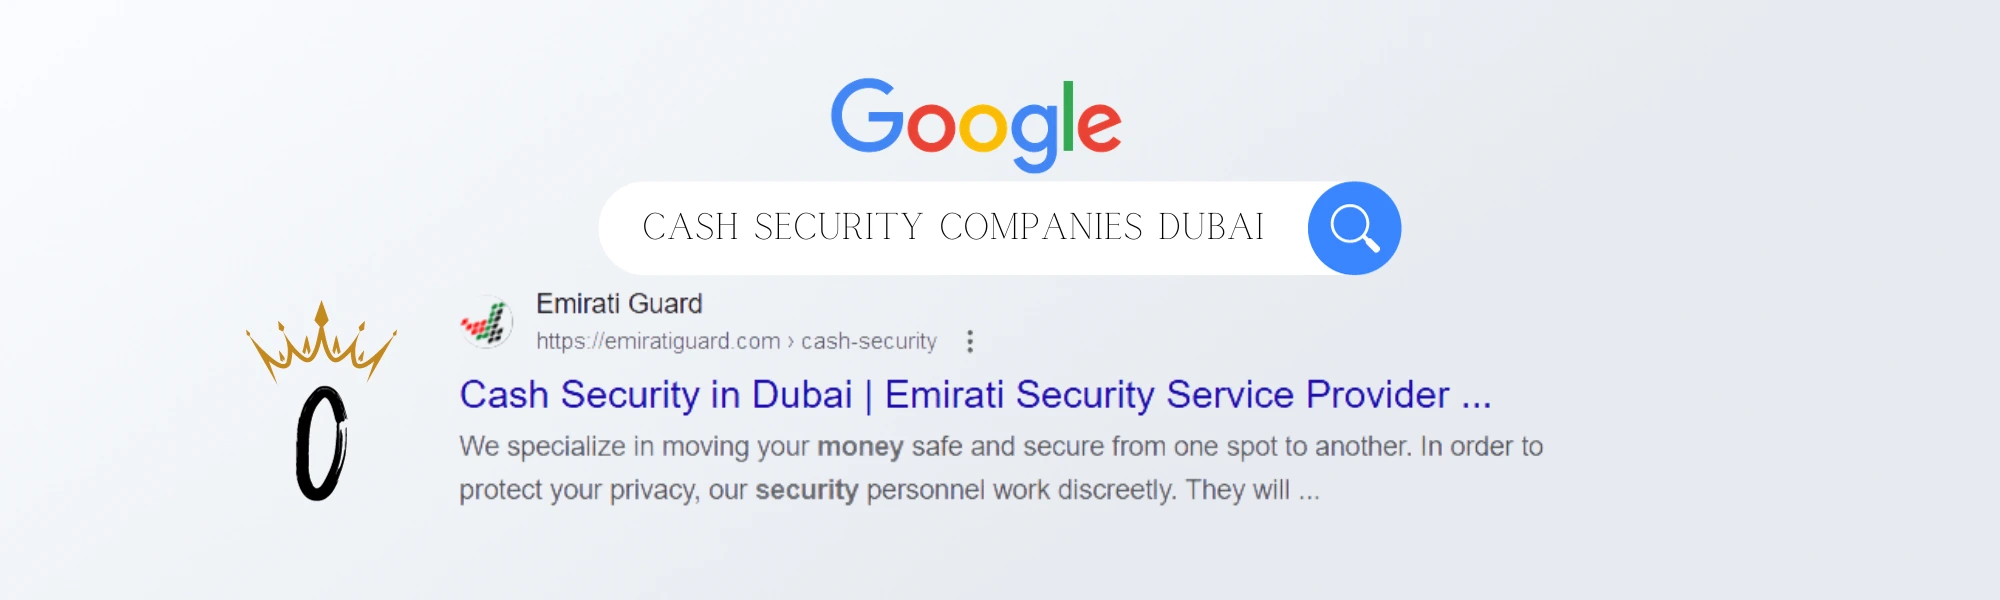 cash security companies dubai